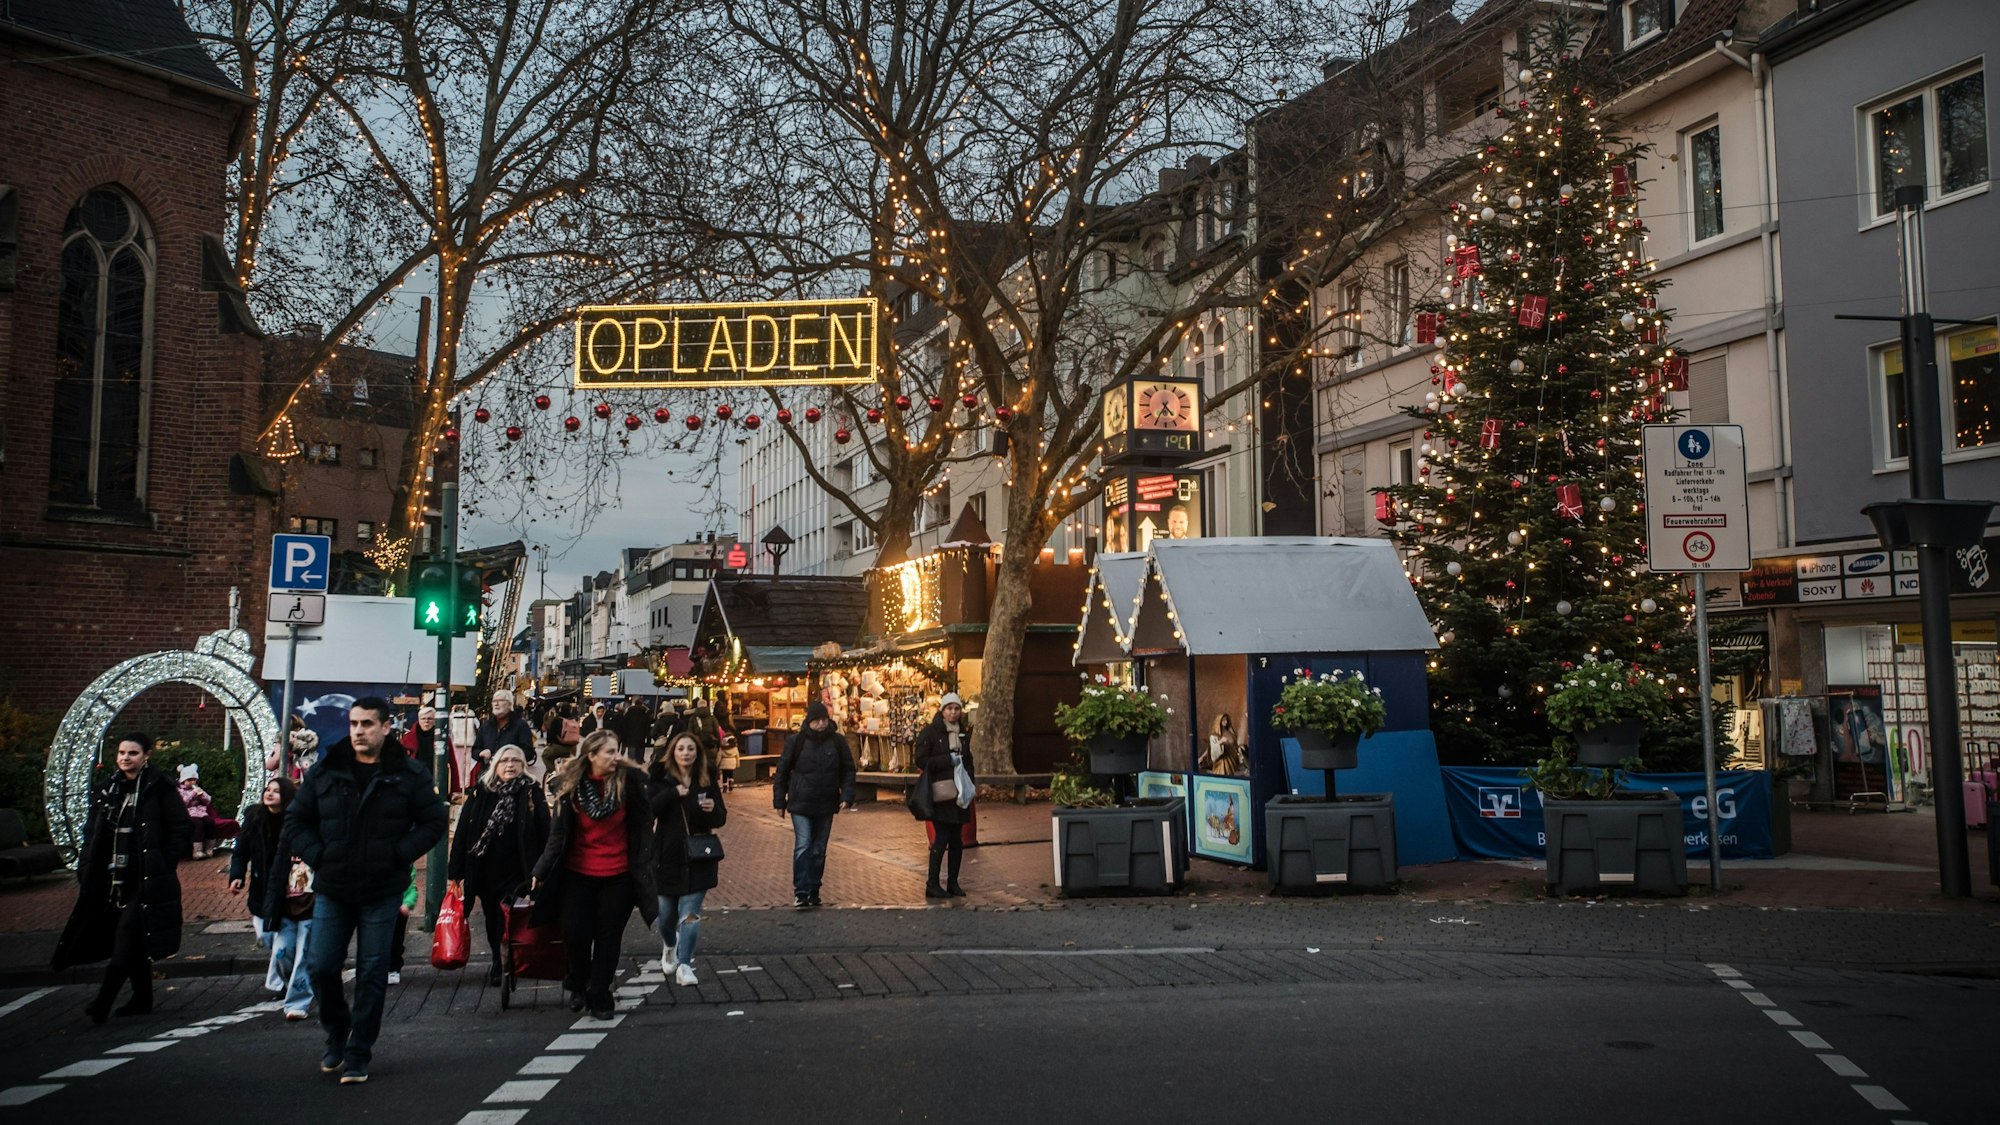 Eingangssituation am Weihnachtsmarkt Opladen. Foto: Ralf Krieger